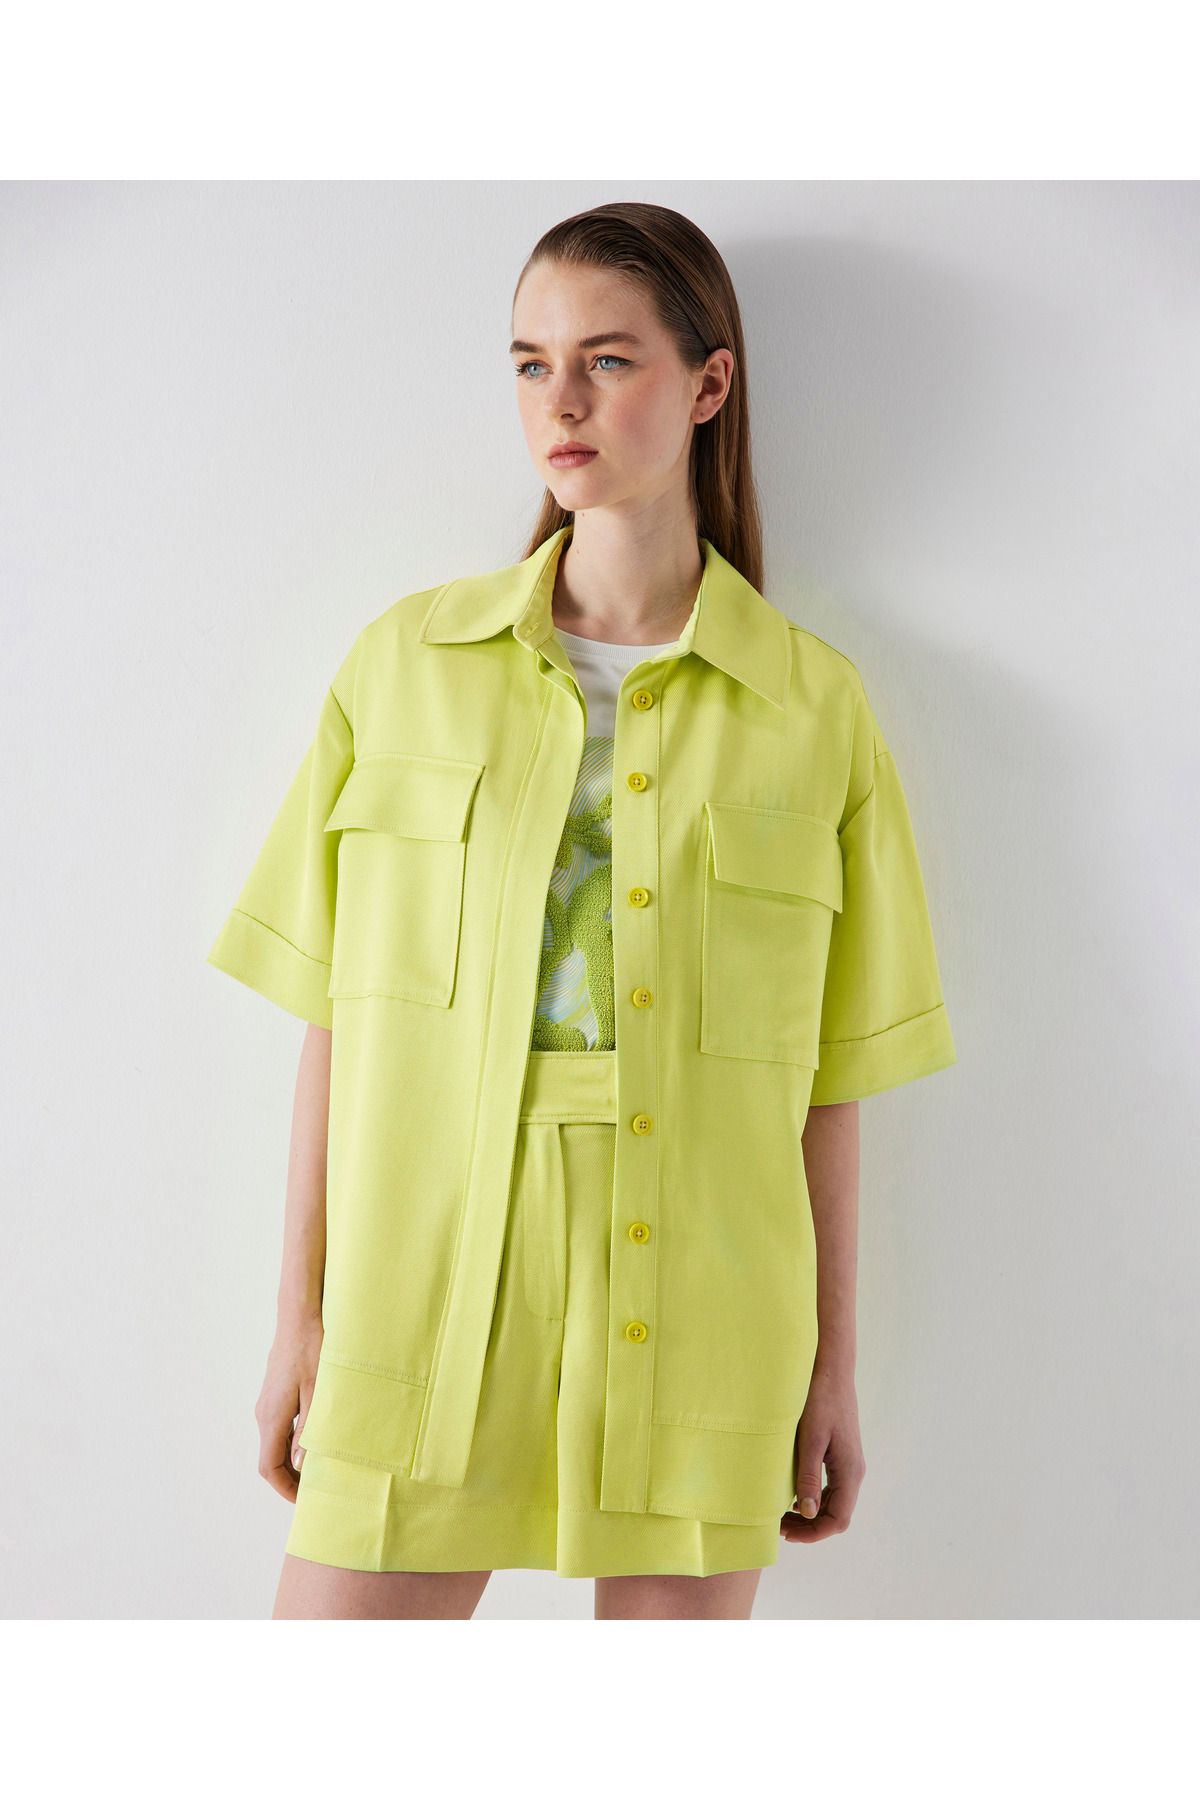 İpekyol Kadın Lime Ceket